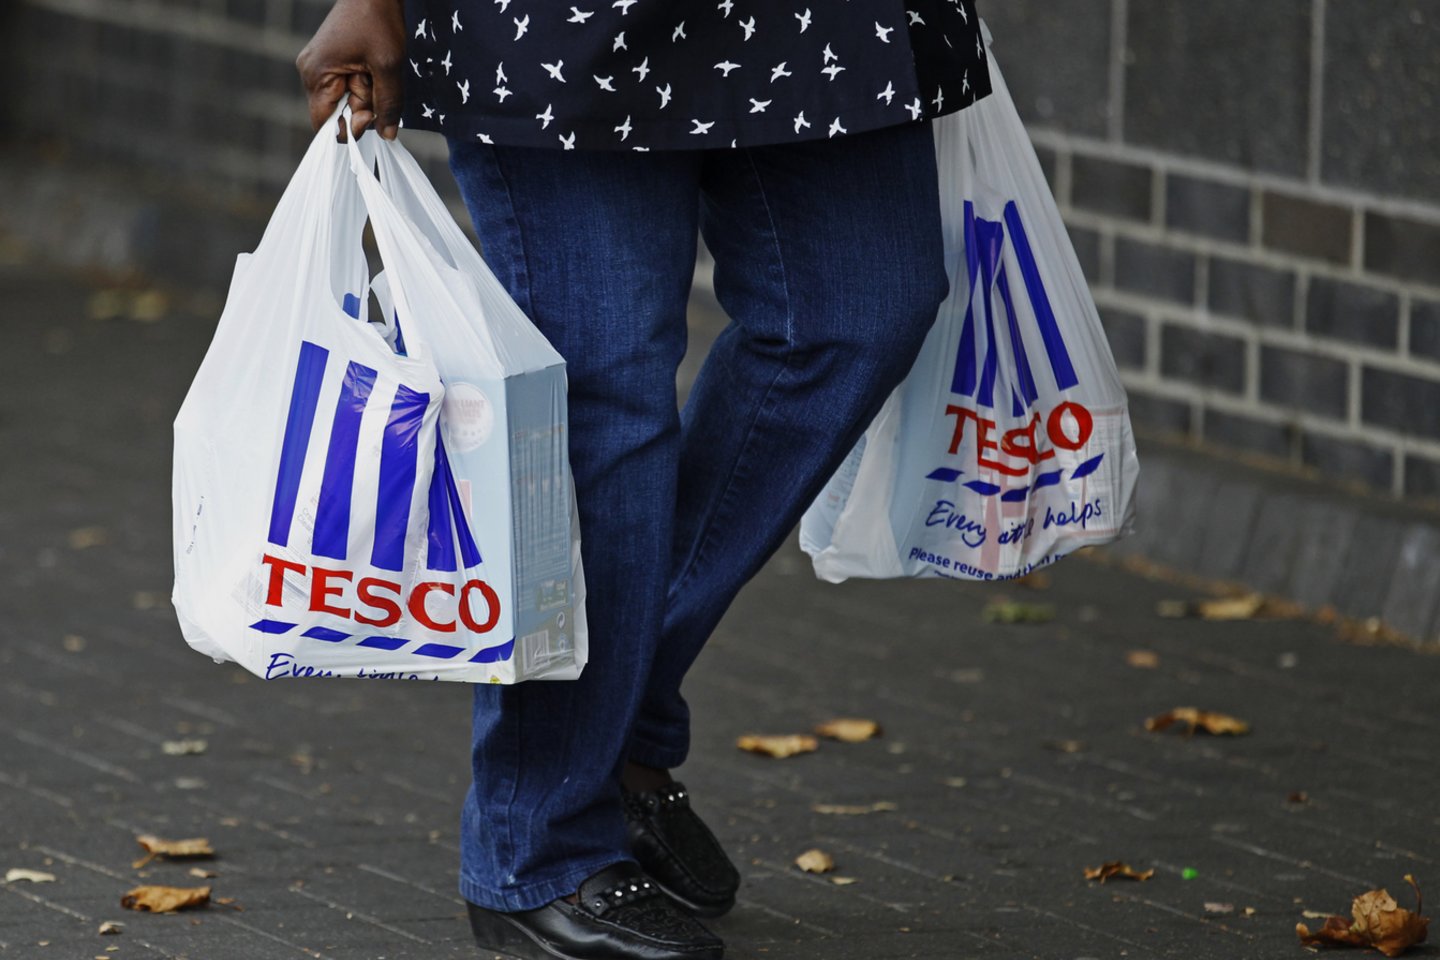  Didžiausia Didžiosios Britanijos mažmenininkė „Tesco“ savo 732 parduotuvėse gali uždaryti mėsos, žuvies ir kulinarijos skyrius, o dėl to gali būti panaikinta iki 15 tūkst. darbo vietų, rašo britų dienraštis „The Daily Mail“, remdamasis informuotais šaltiniais. <br>Reuters/Scanpix nuotr.